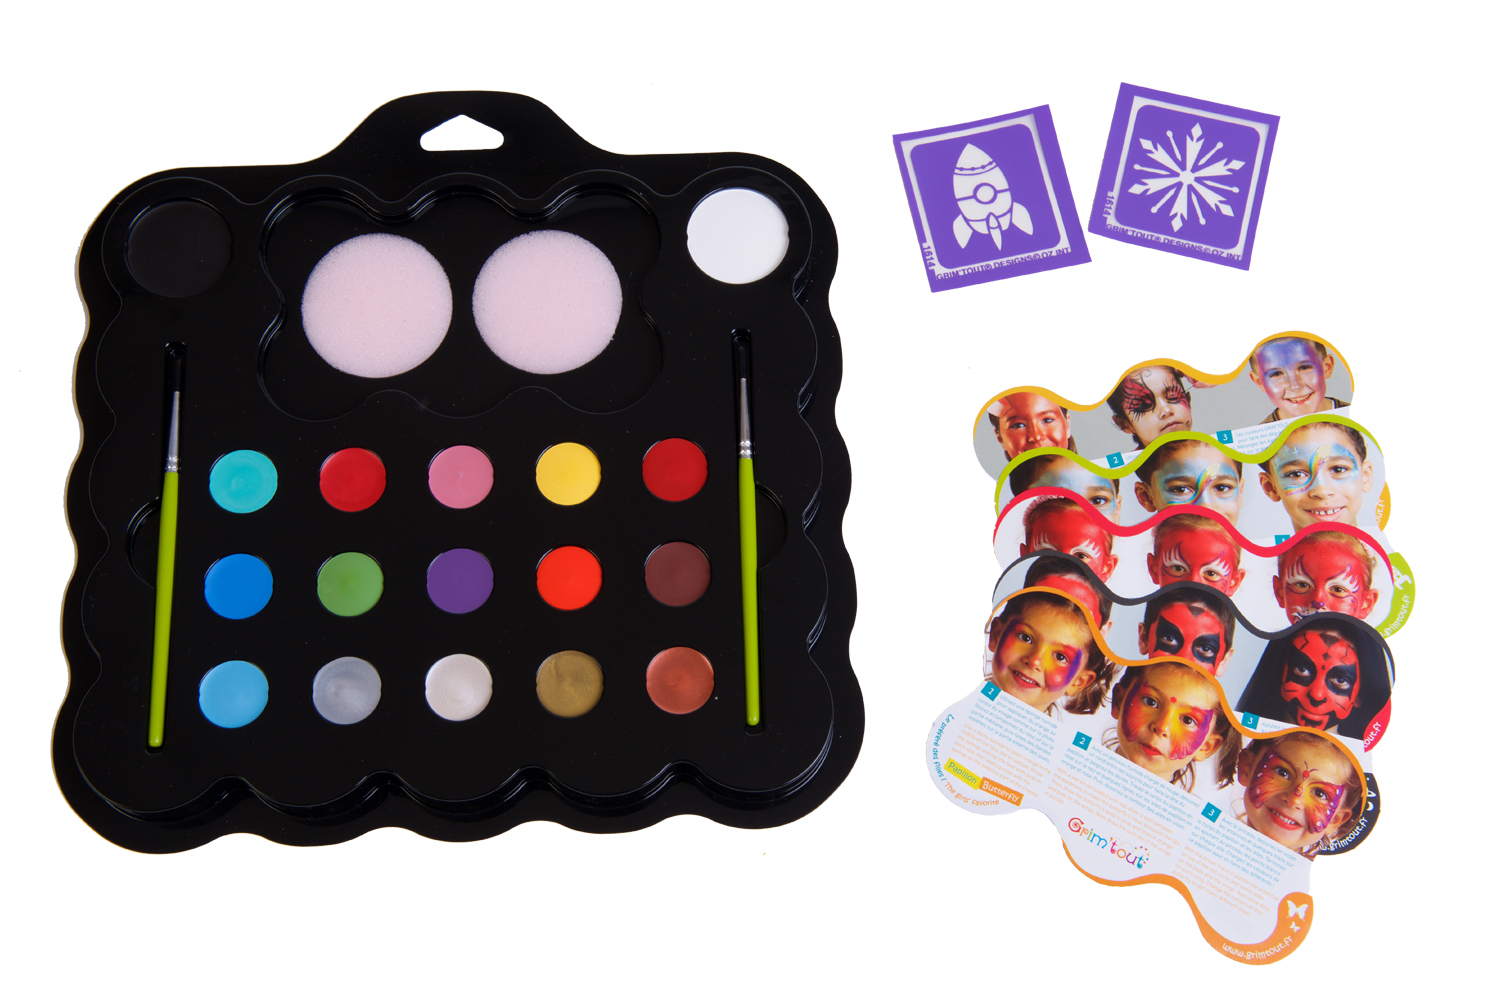 Maxi kit de maquillage enfant - 17 couleurs + accessoires